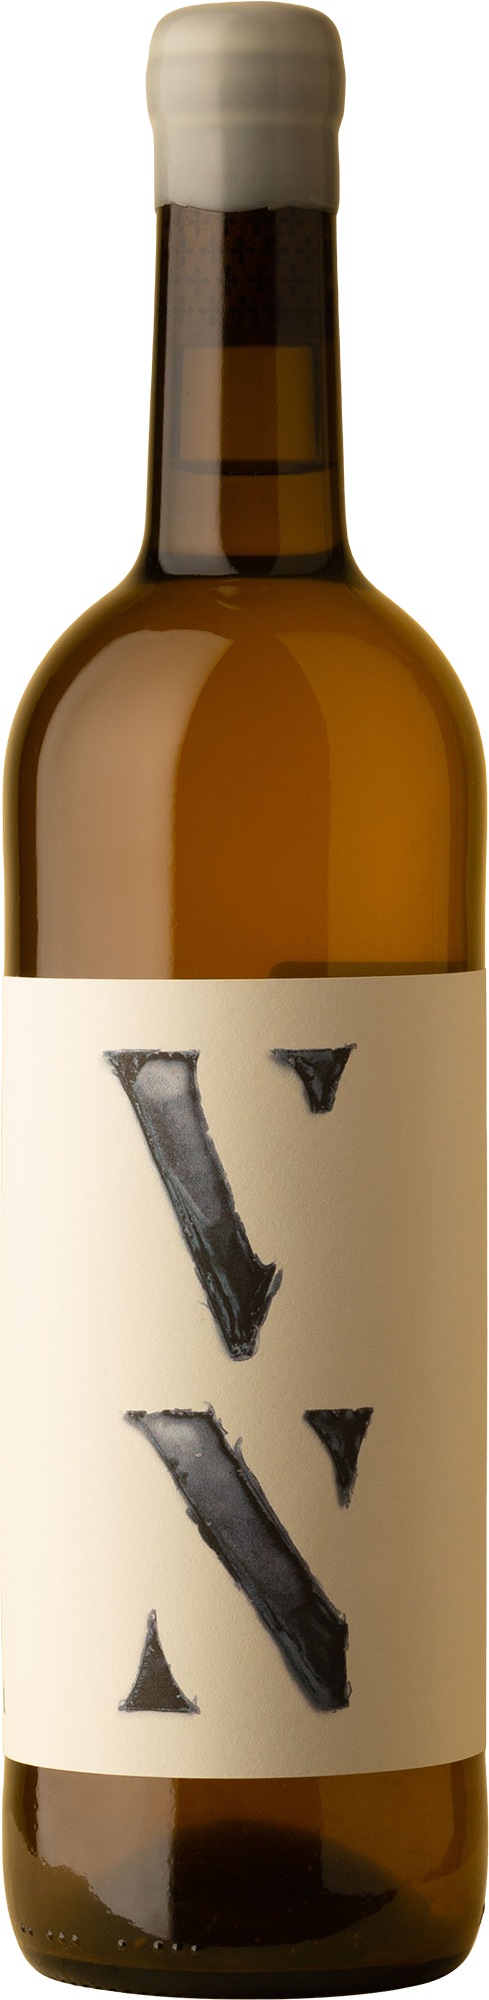 Partida Creus - VN Blanco 2020 White Wine